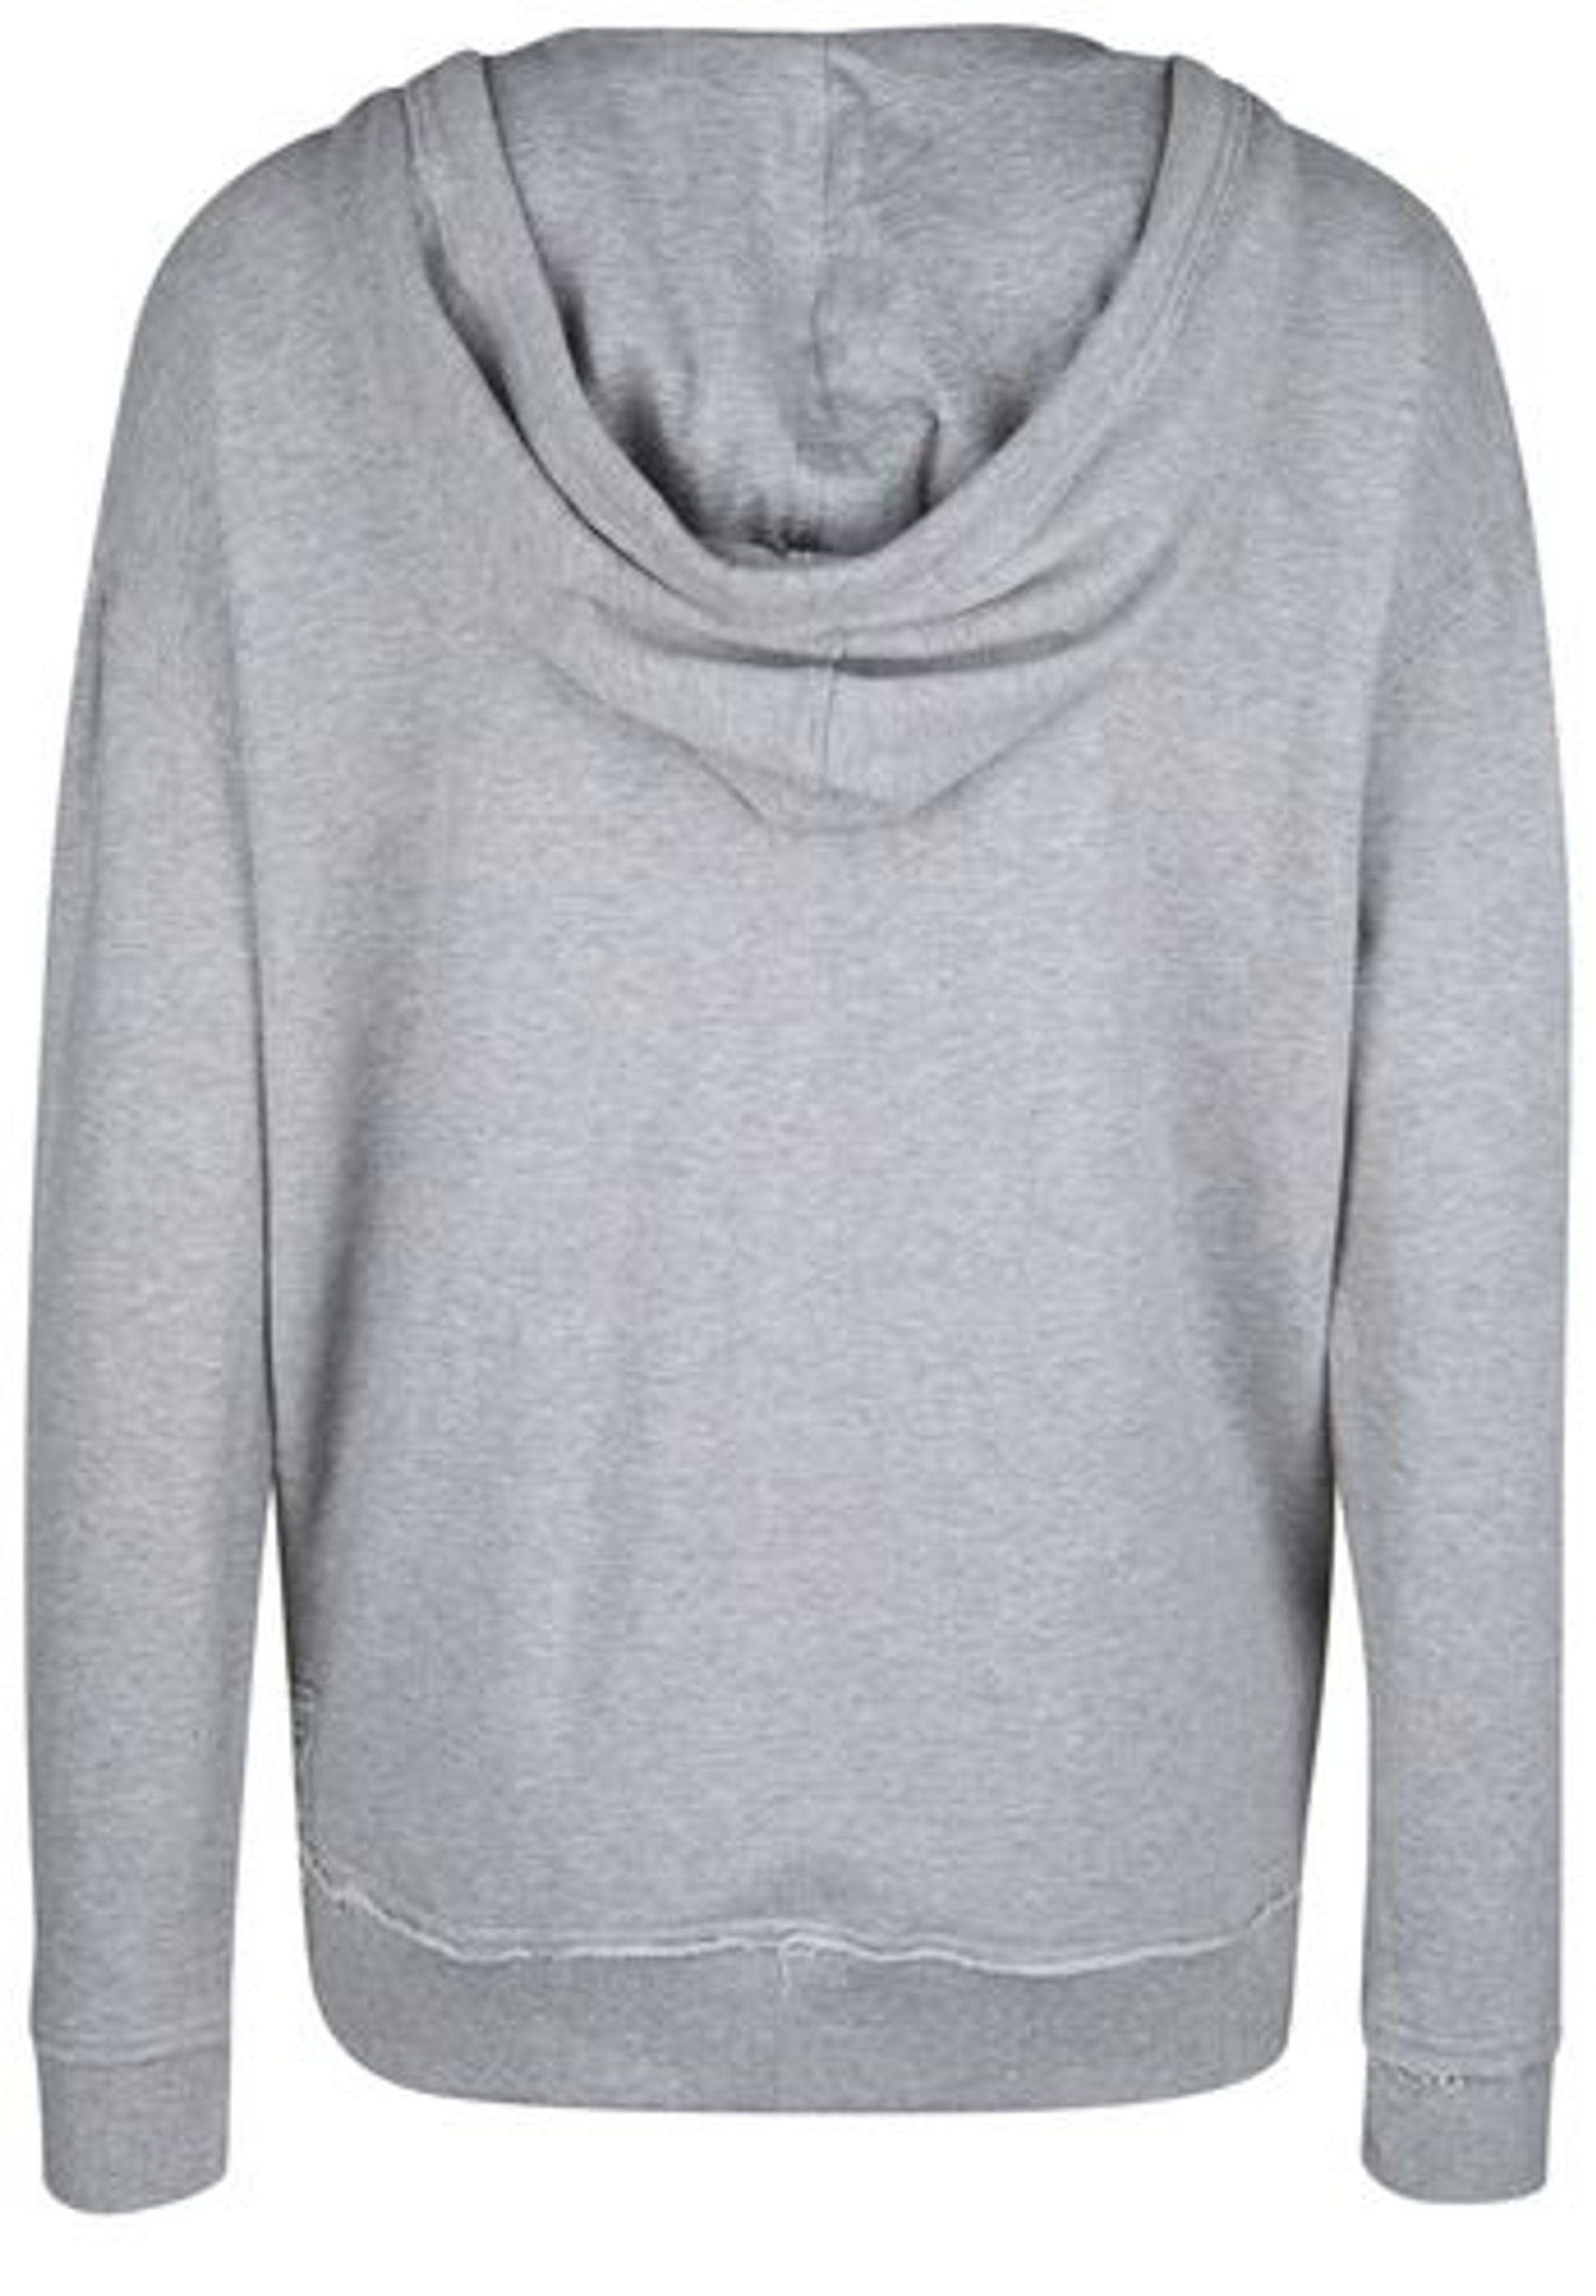 DAILY´S Kapuzenshirt HEERA: Damen Melange Sweatshirt Grau Kapuzen